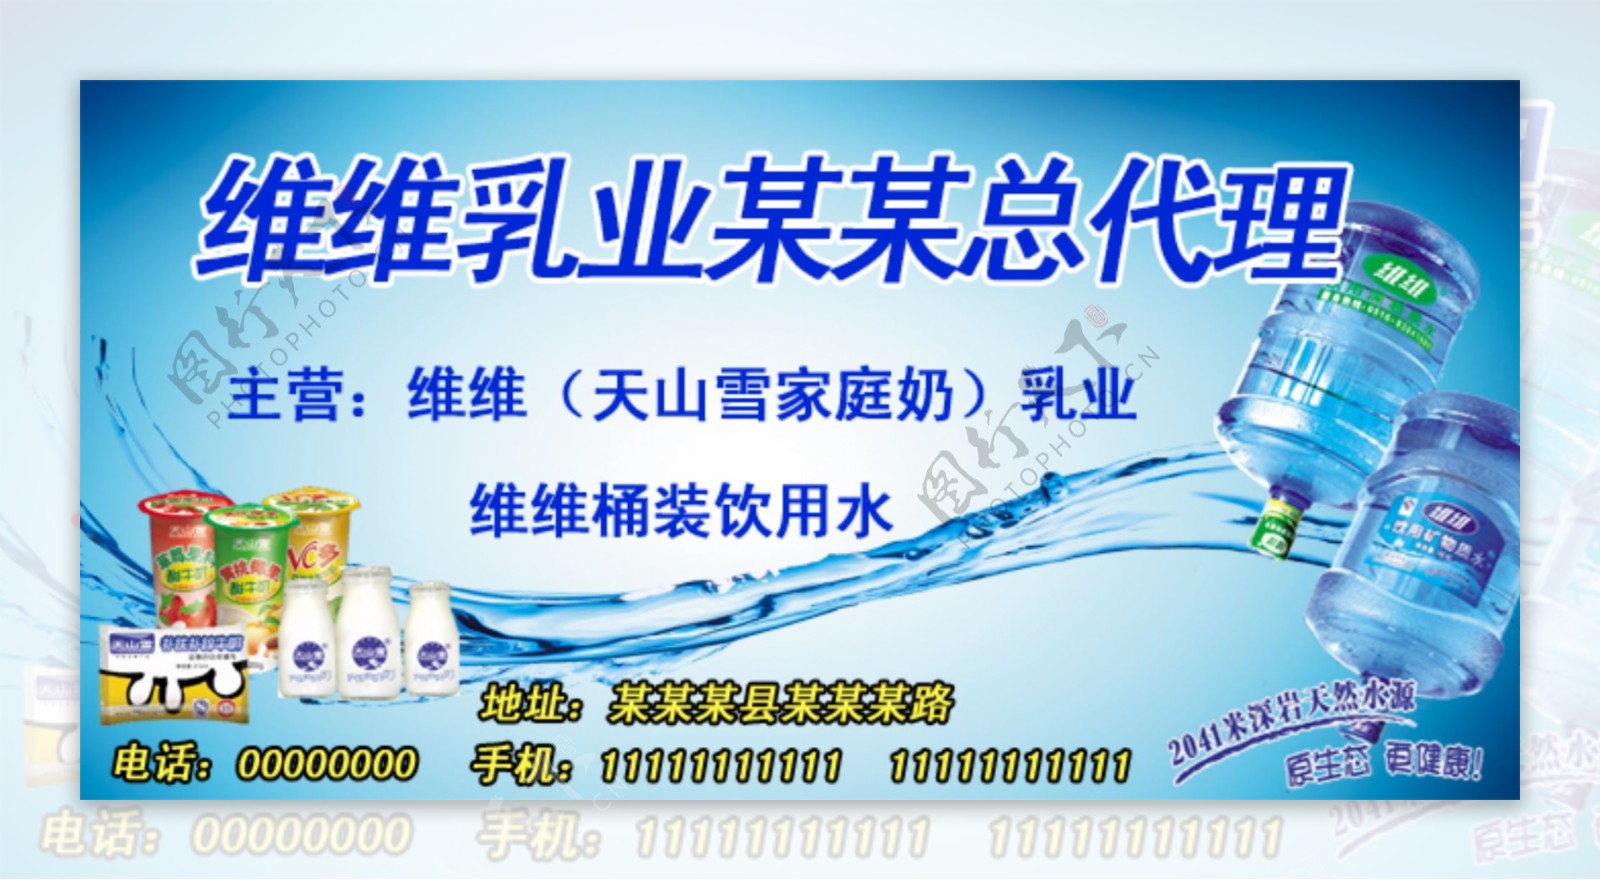 维维乳业宣传广告